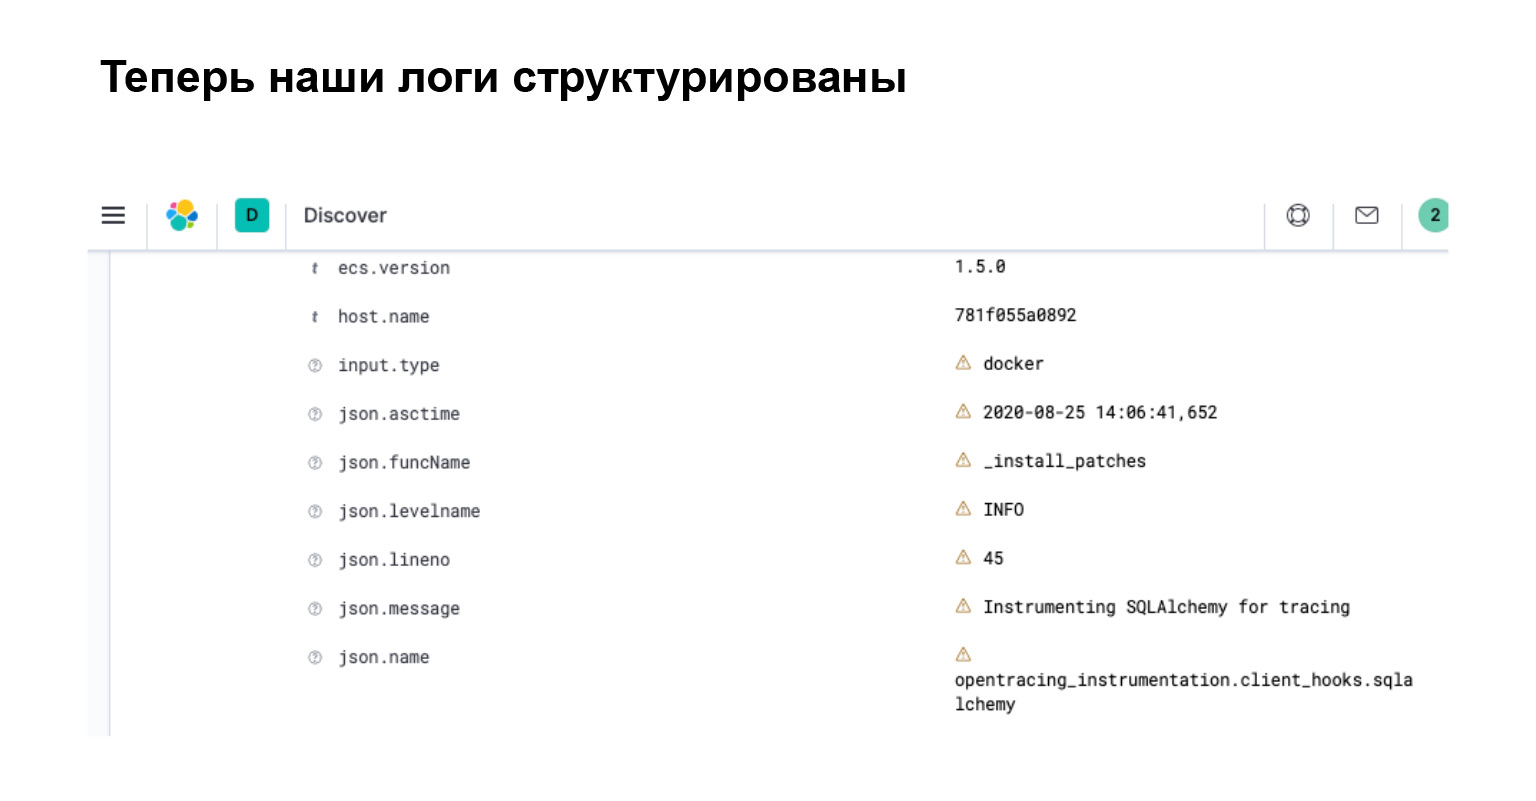 Удобное логирование на бэкенде. Доклад Яндекса - 16